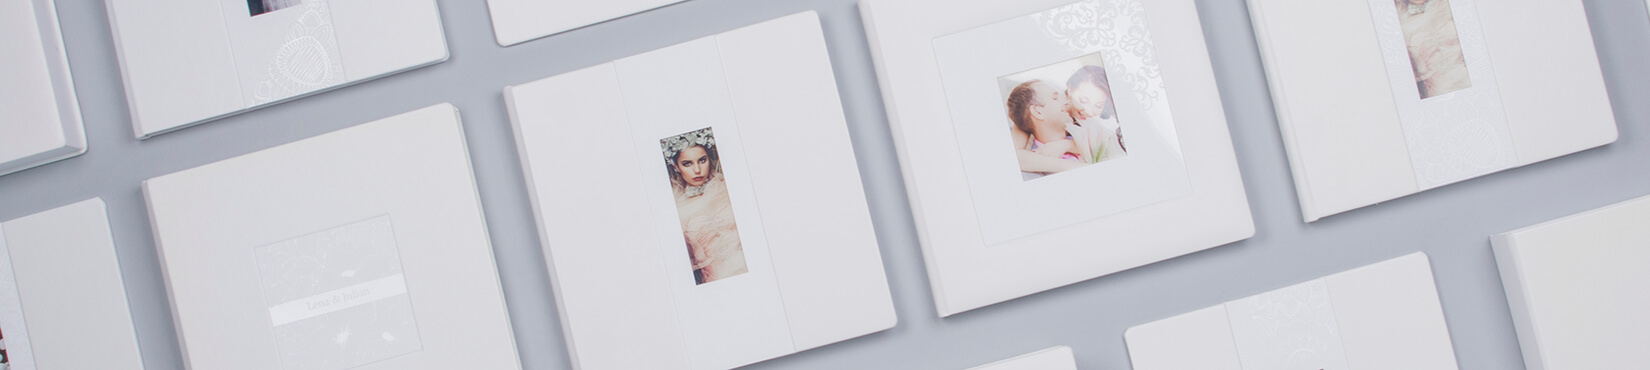 Kollektion Weisse Perle Complete Album Set für professionelle Fotografen nPhoto